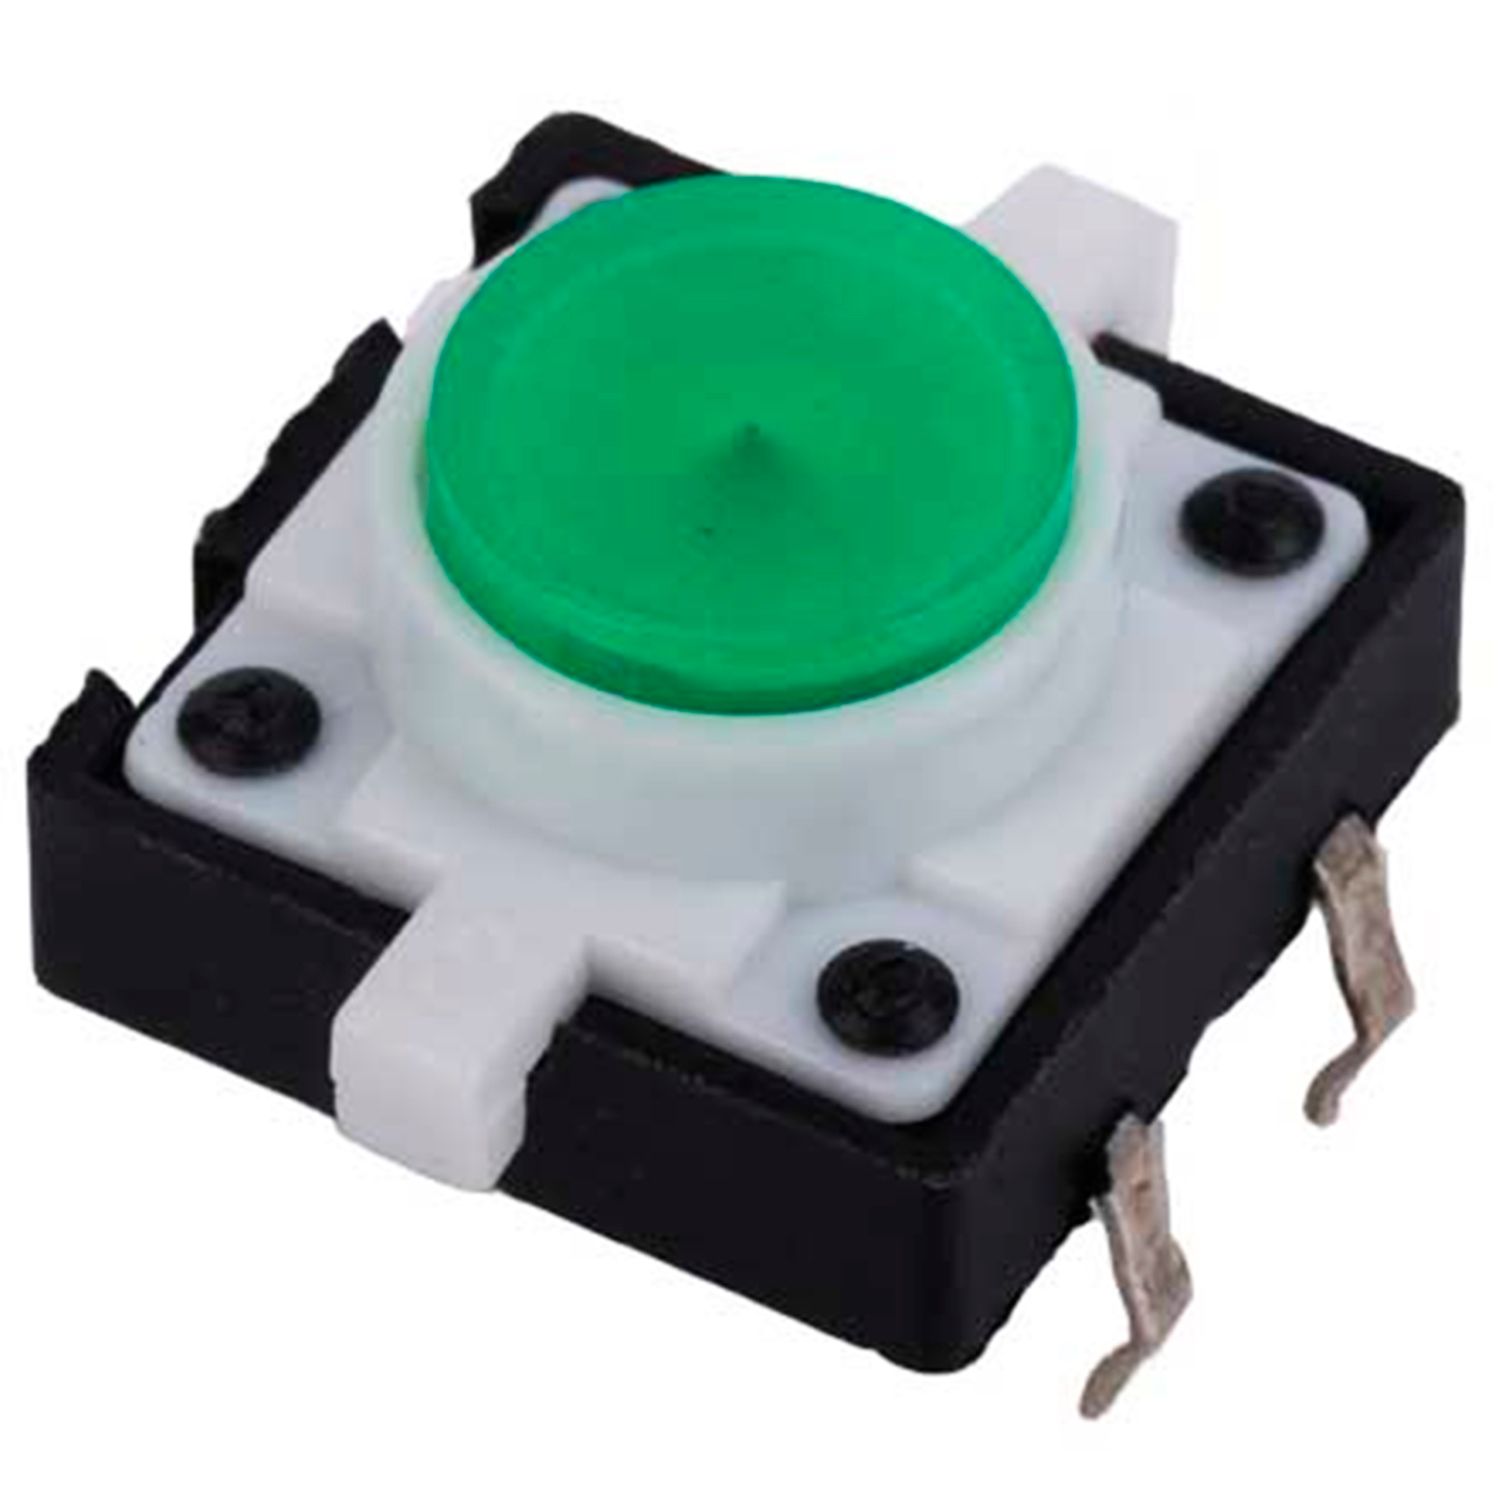 Тактова кнопка з підсвічуванням 12x12x7.3 мм, зелена